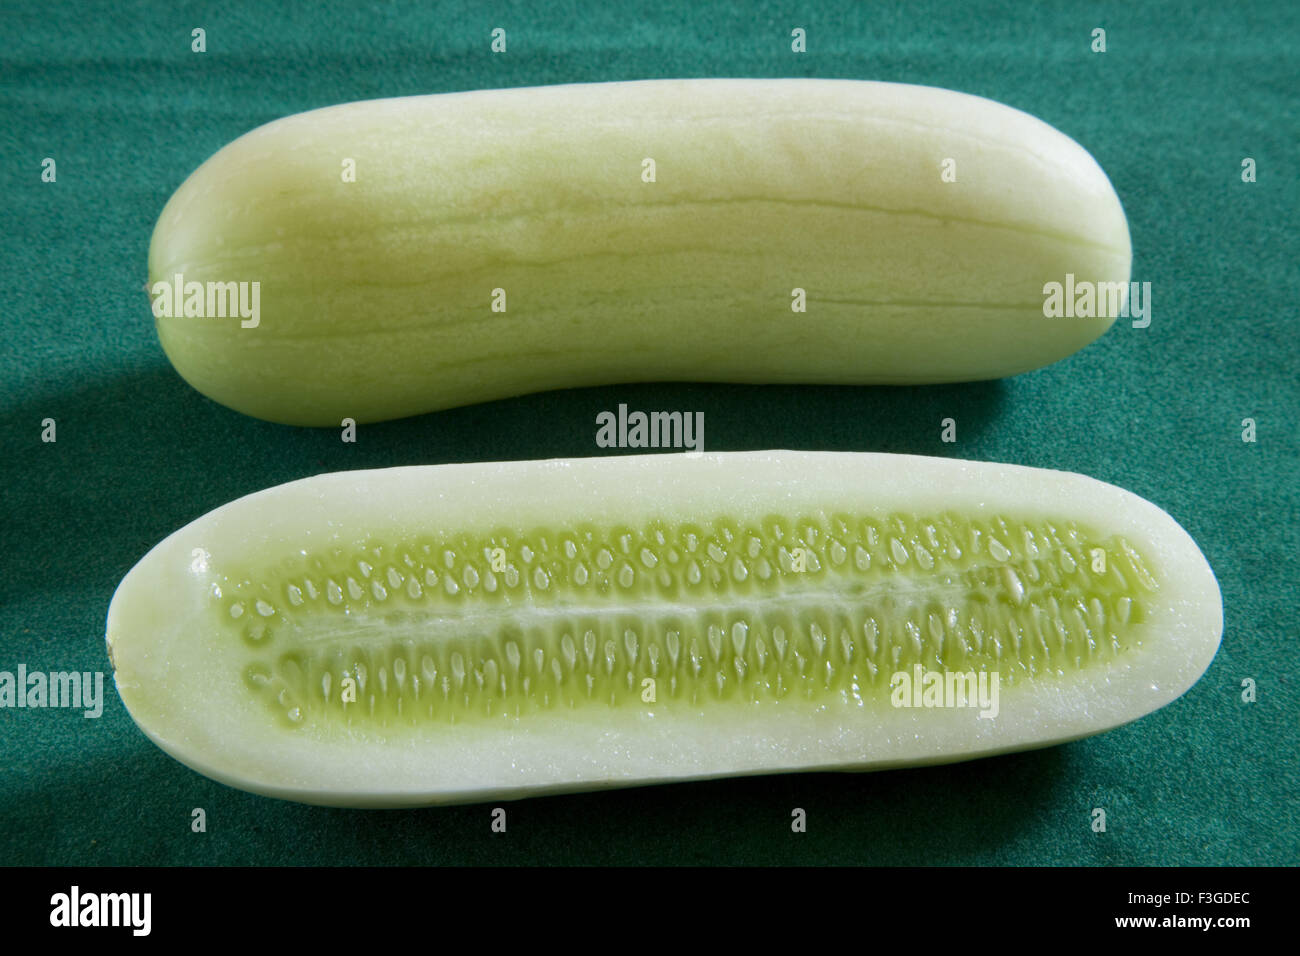 L'un et le demi-concombre légumes verts coupés Kakdi sur fond vert Banque D'Images